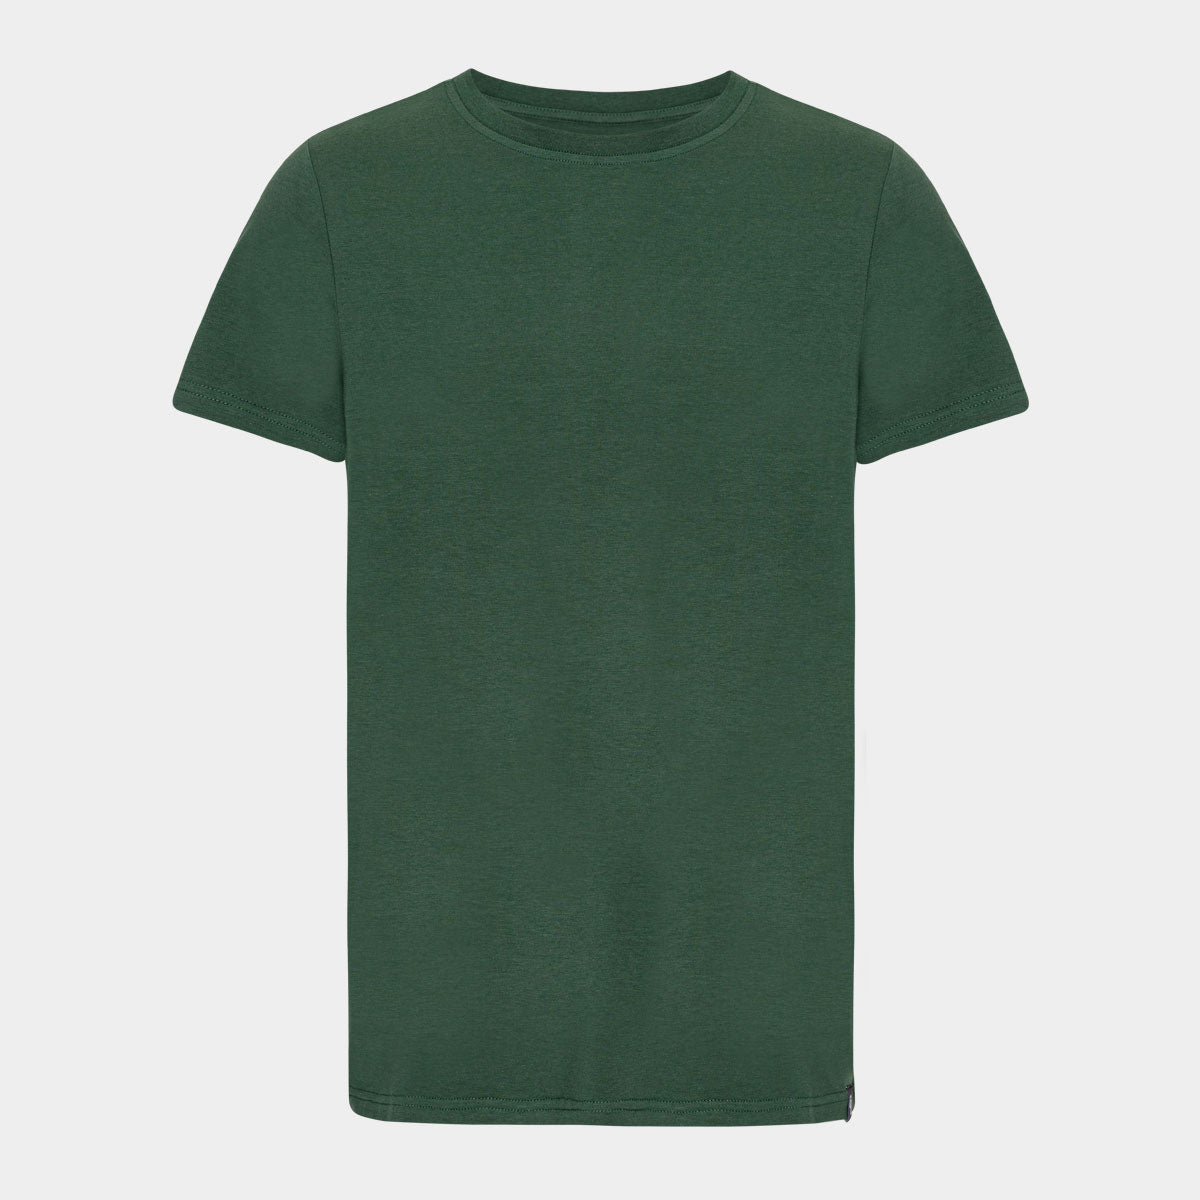 Se Mørkegrøn bambus T-shirt med crew neck til mænd fra Copenhagen Bamboo, XXL hos Bambustøj.dk